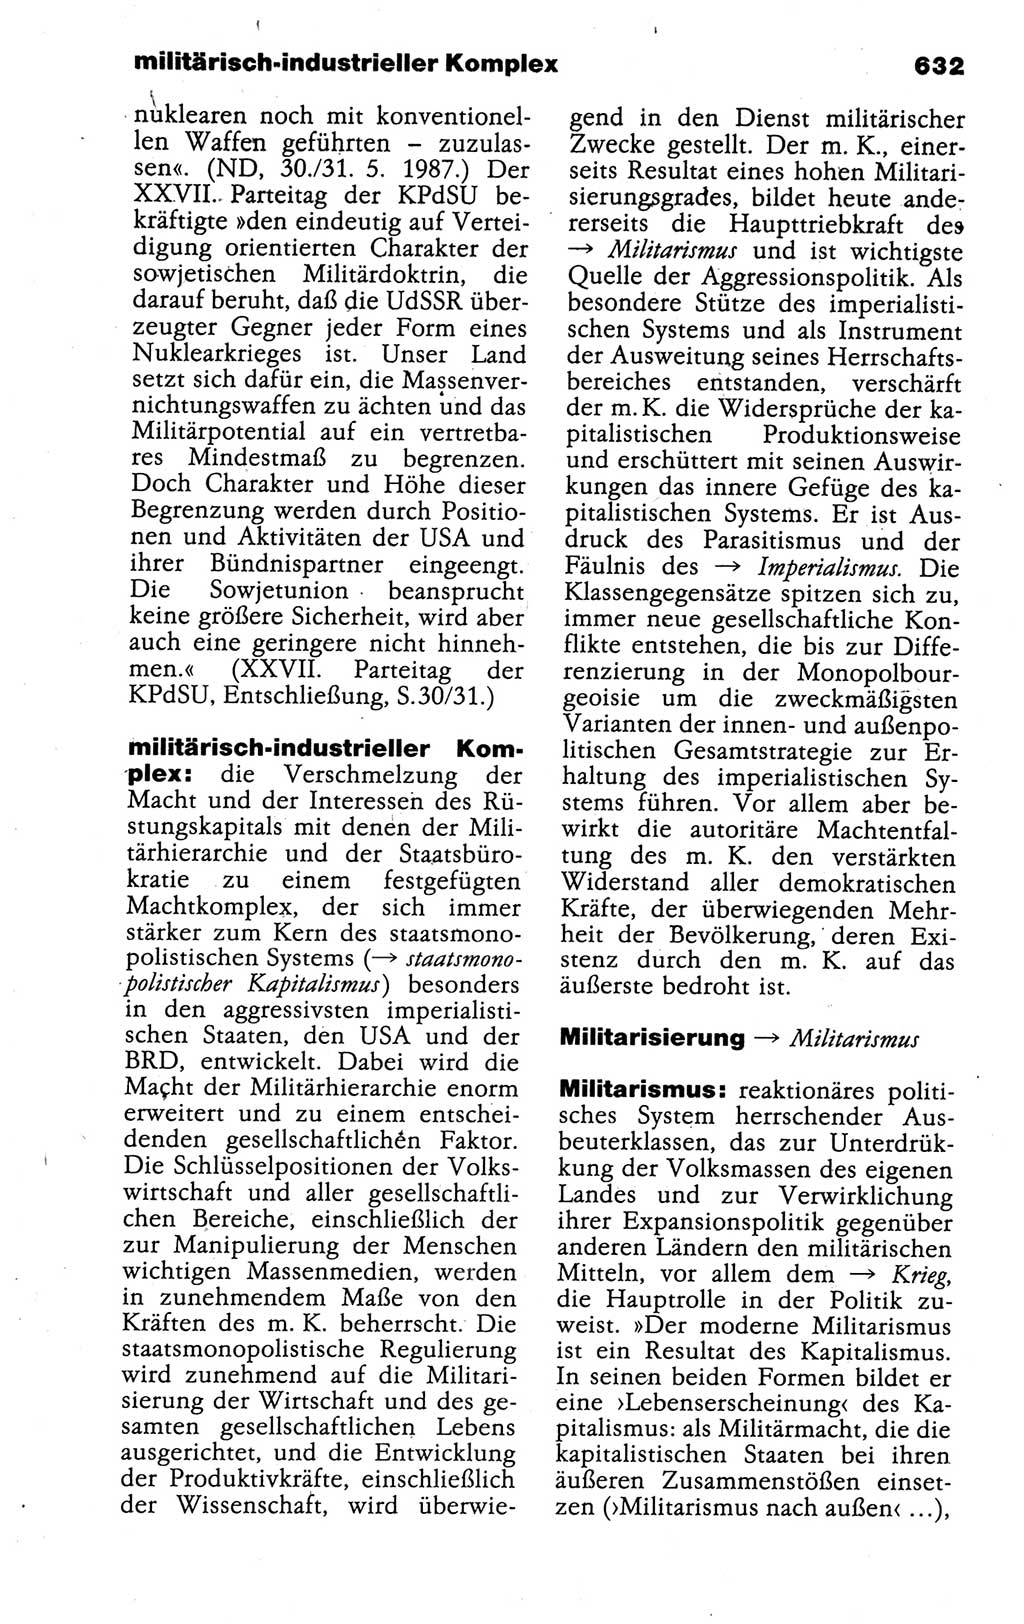 Kleines politisches Wörterbuch [Deutsche Demokratische Republik (DDR)] 1988, Seite 632 (Kl. pol. Wb. DDR 1988, S. 632)